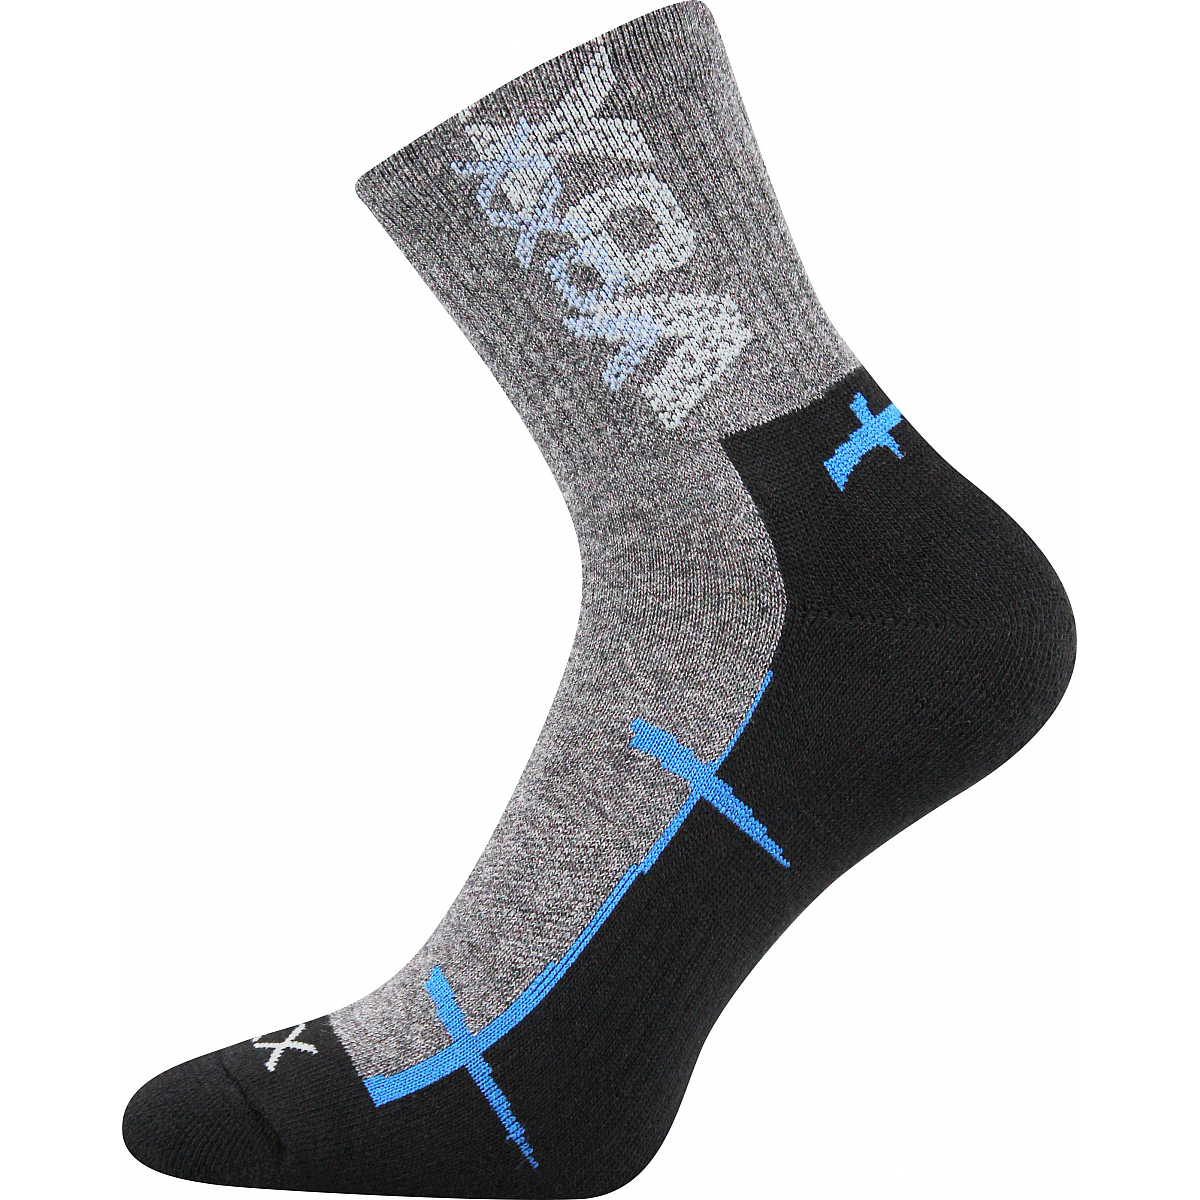 Sportovní ponožky Voxx Walli - šedé-černé, 43-46